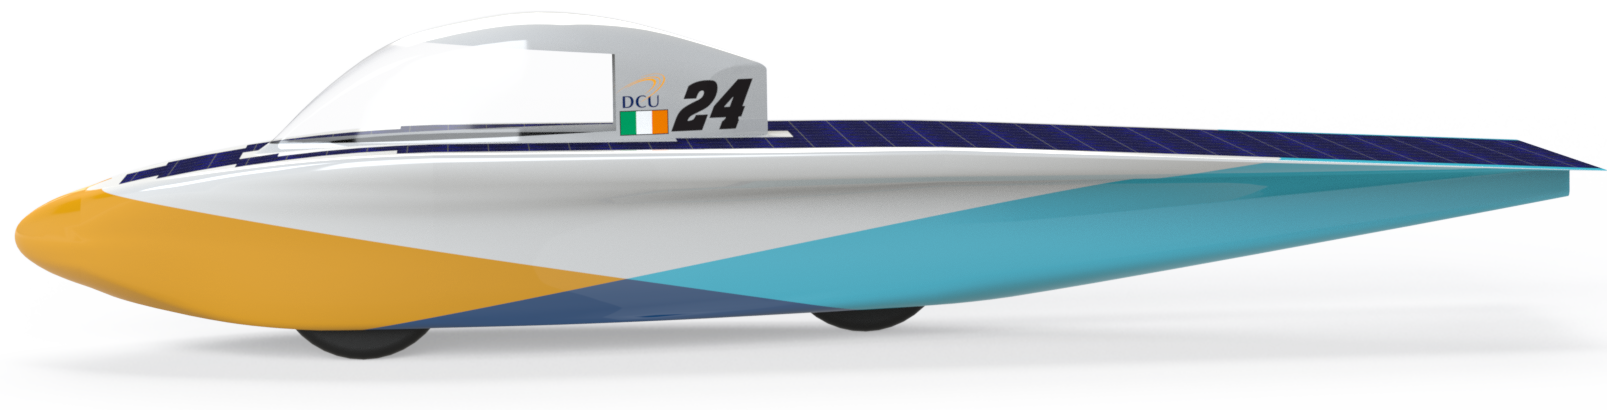 DCU Solar Racing Car Render